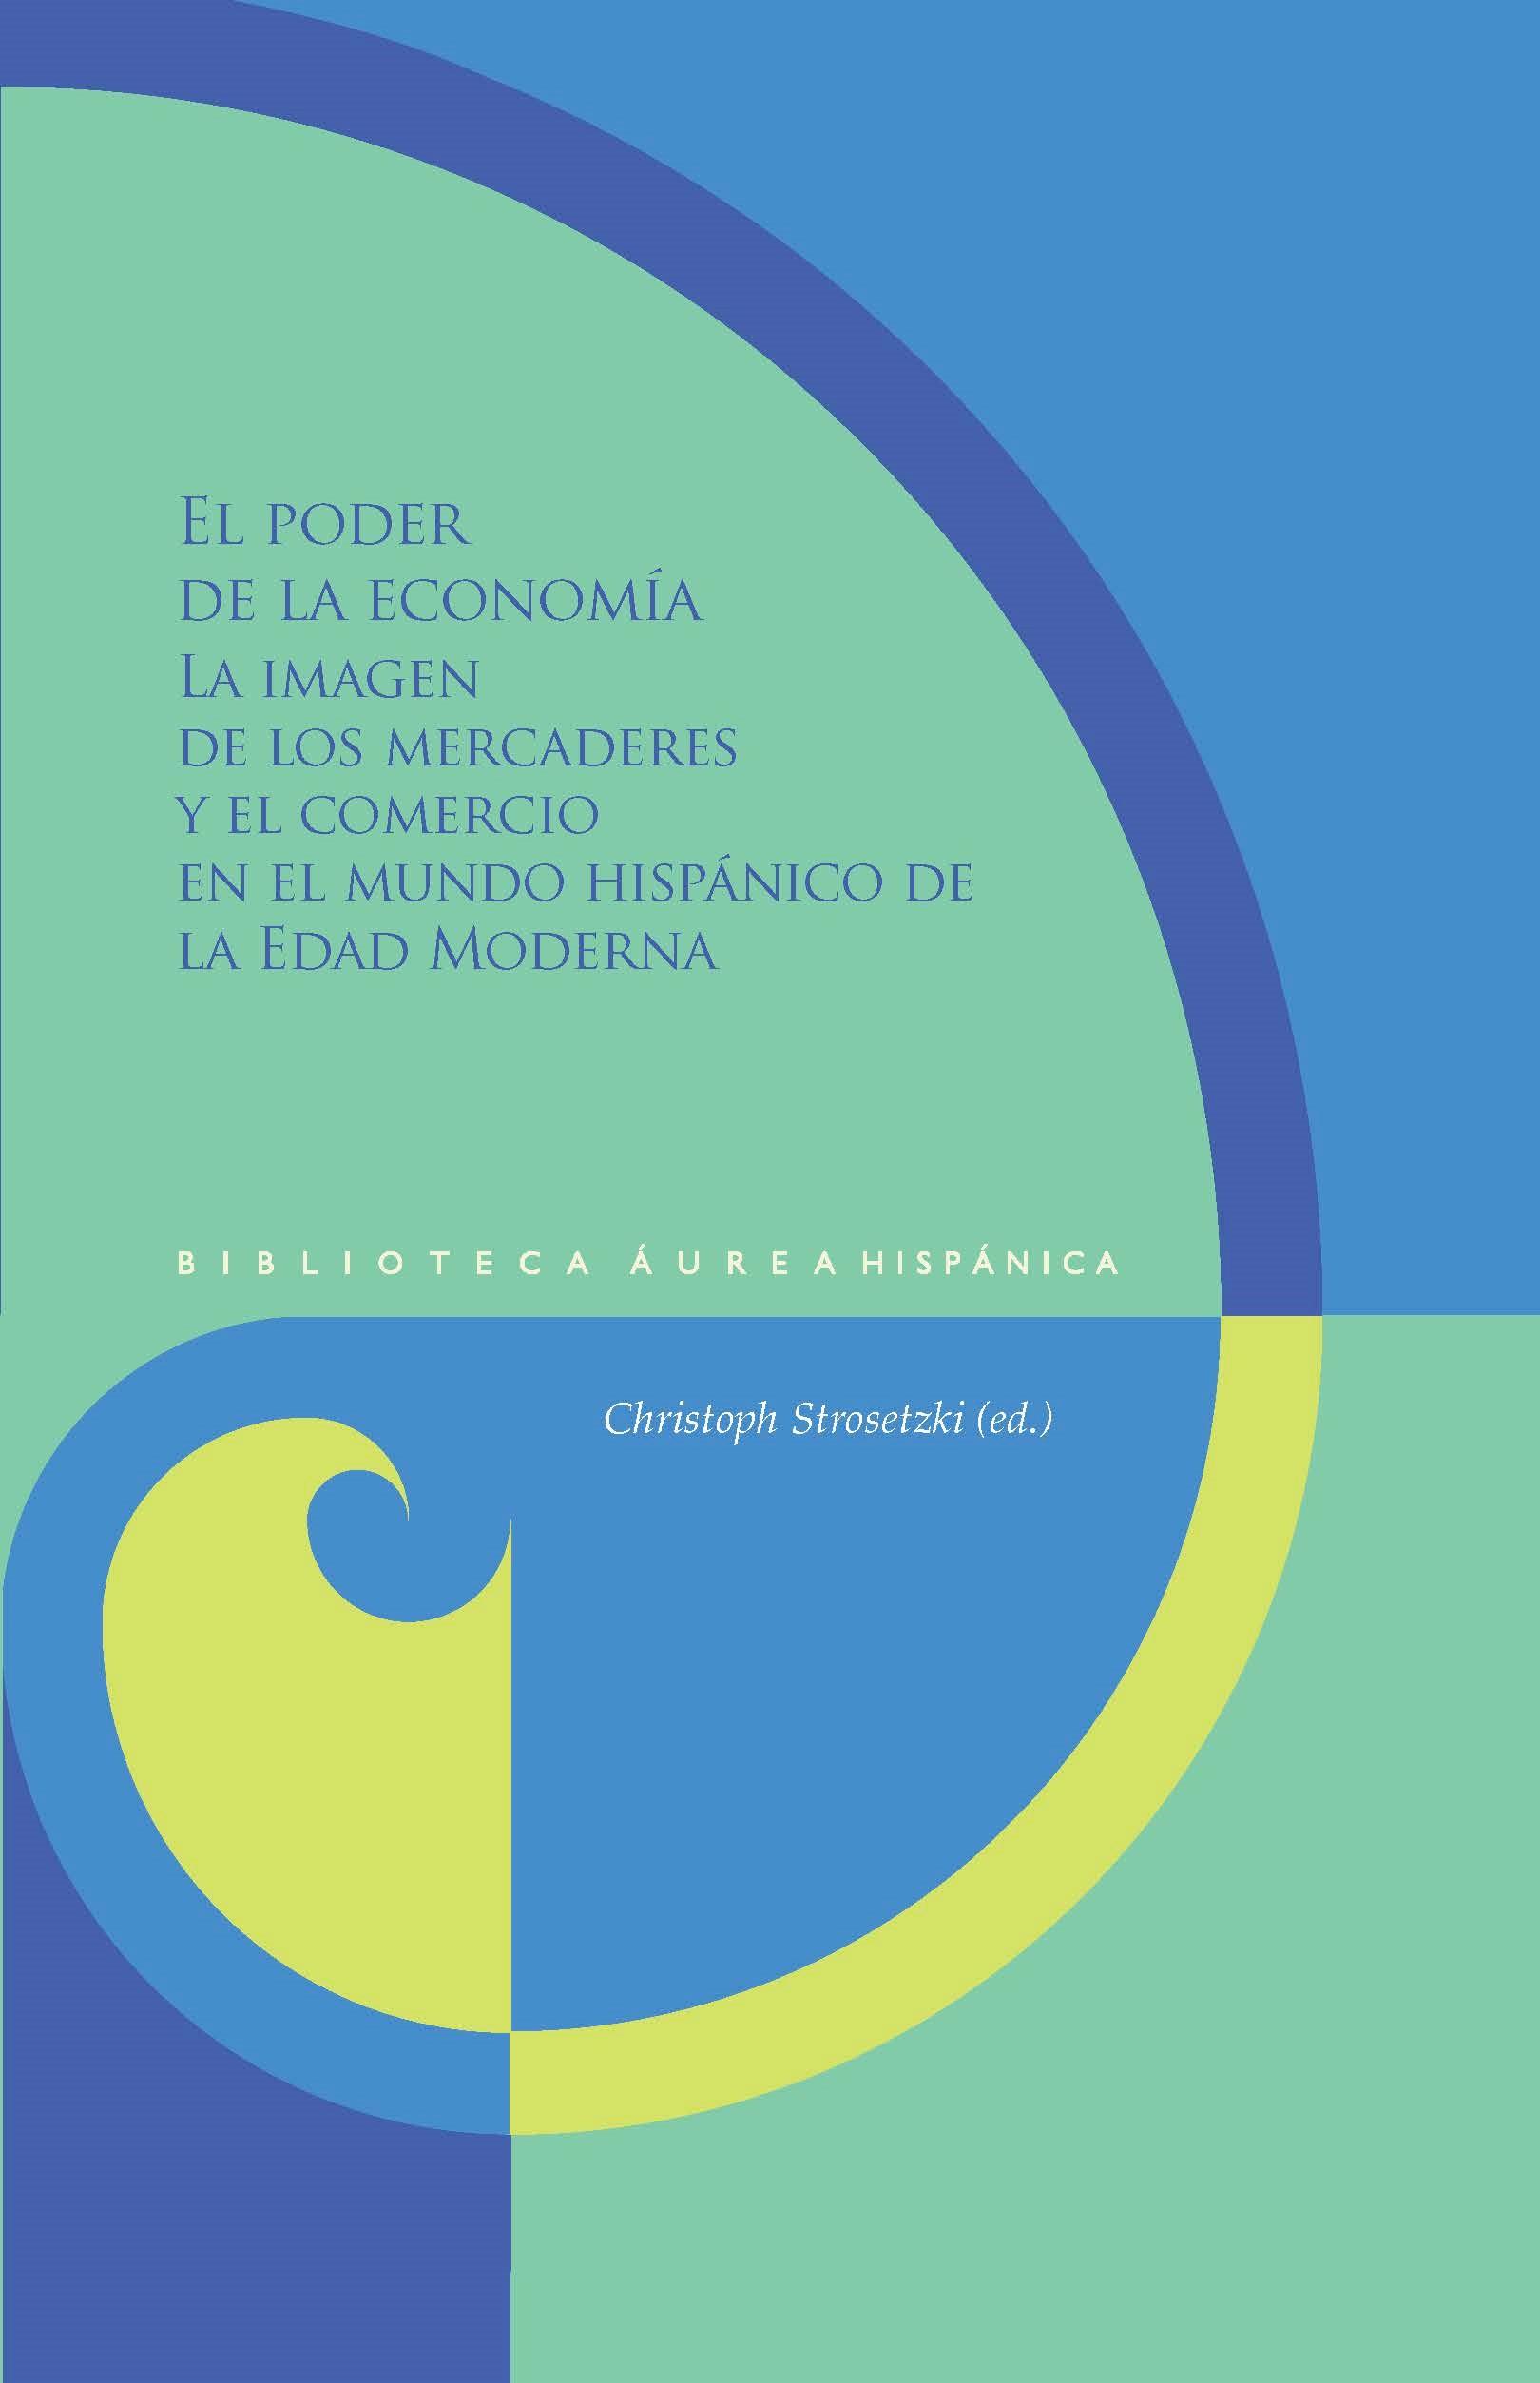 El poder de la economía "La imagen de los mercaderes y el comercio en el mundo hispánico de la Edad Moderna"